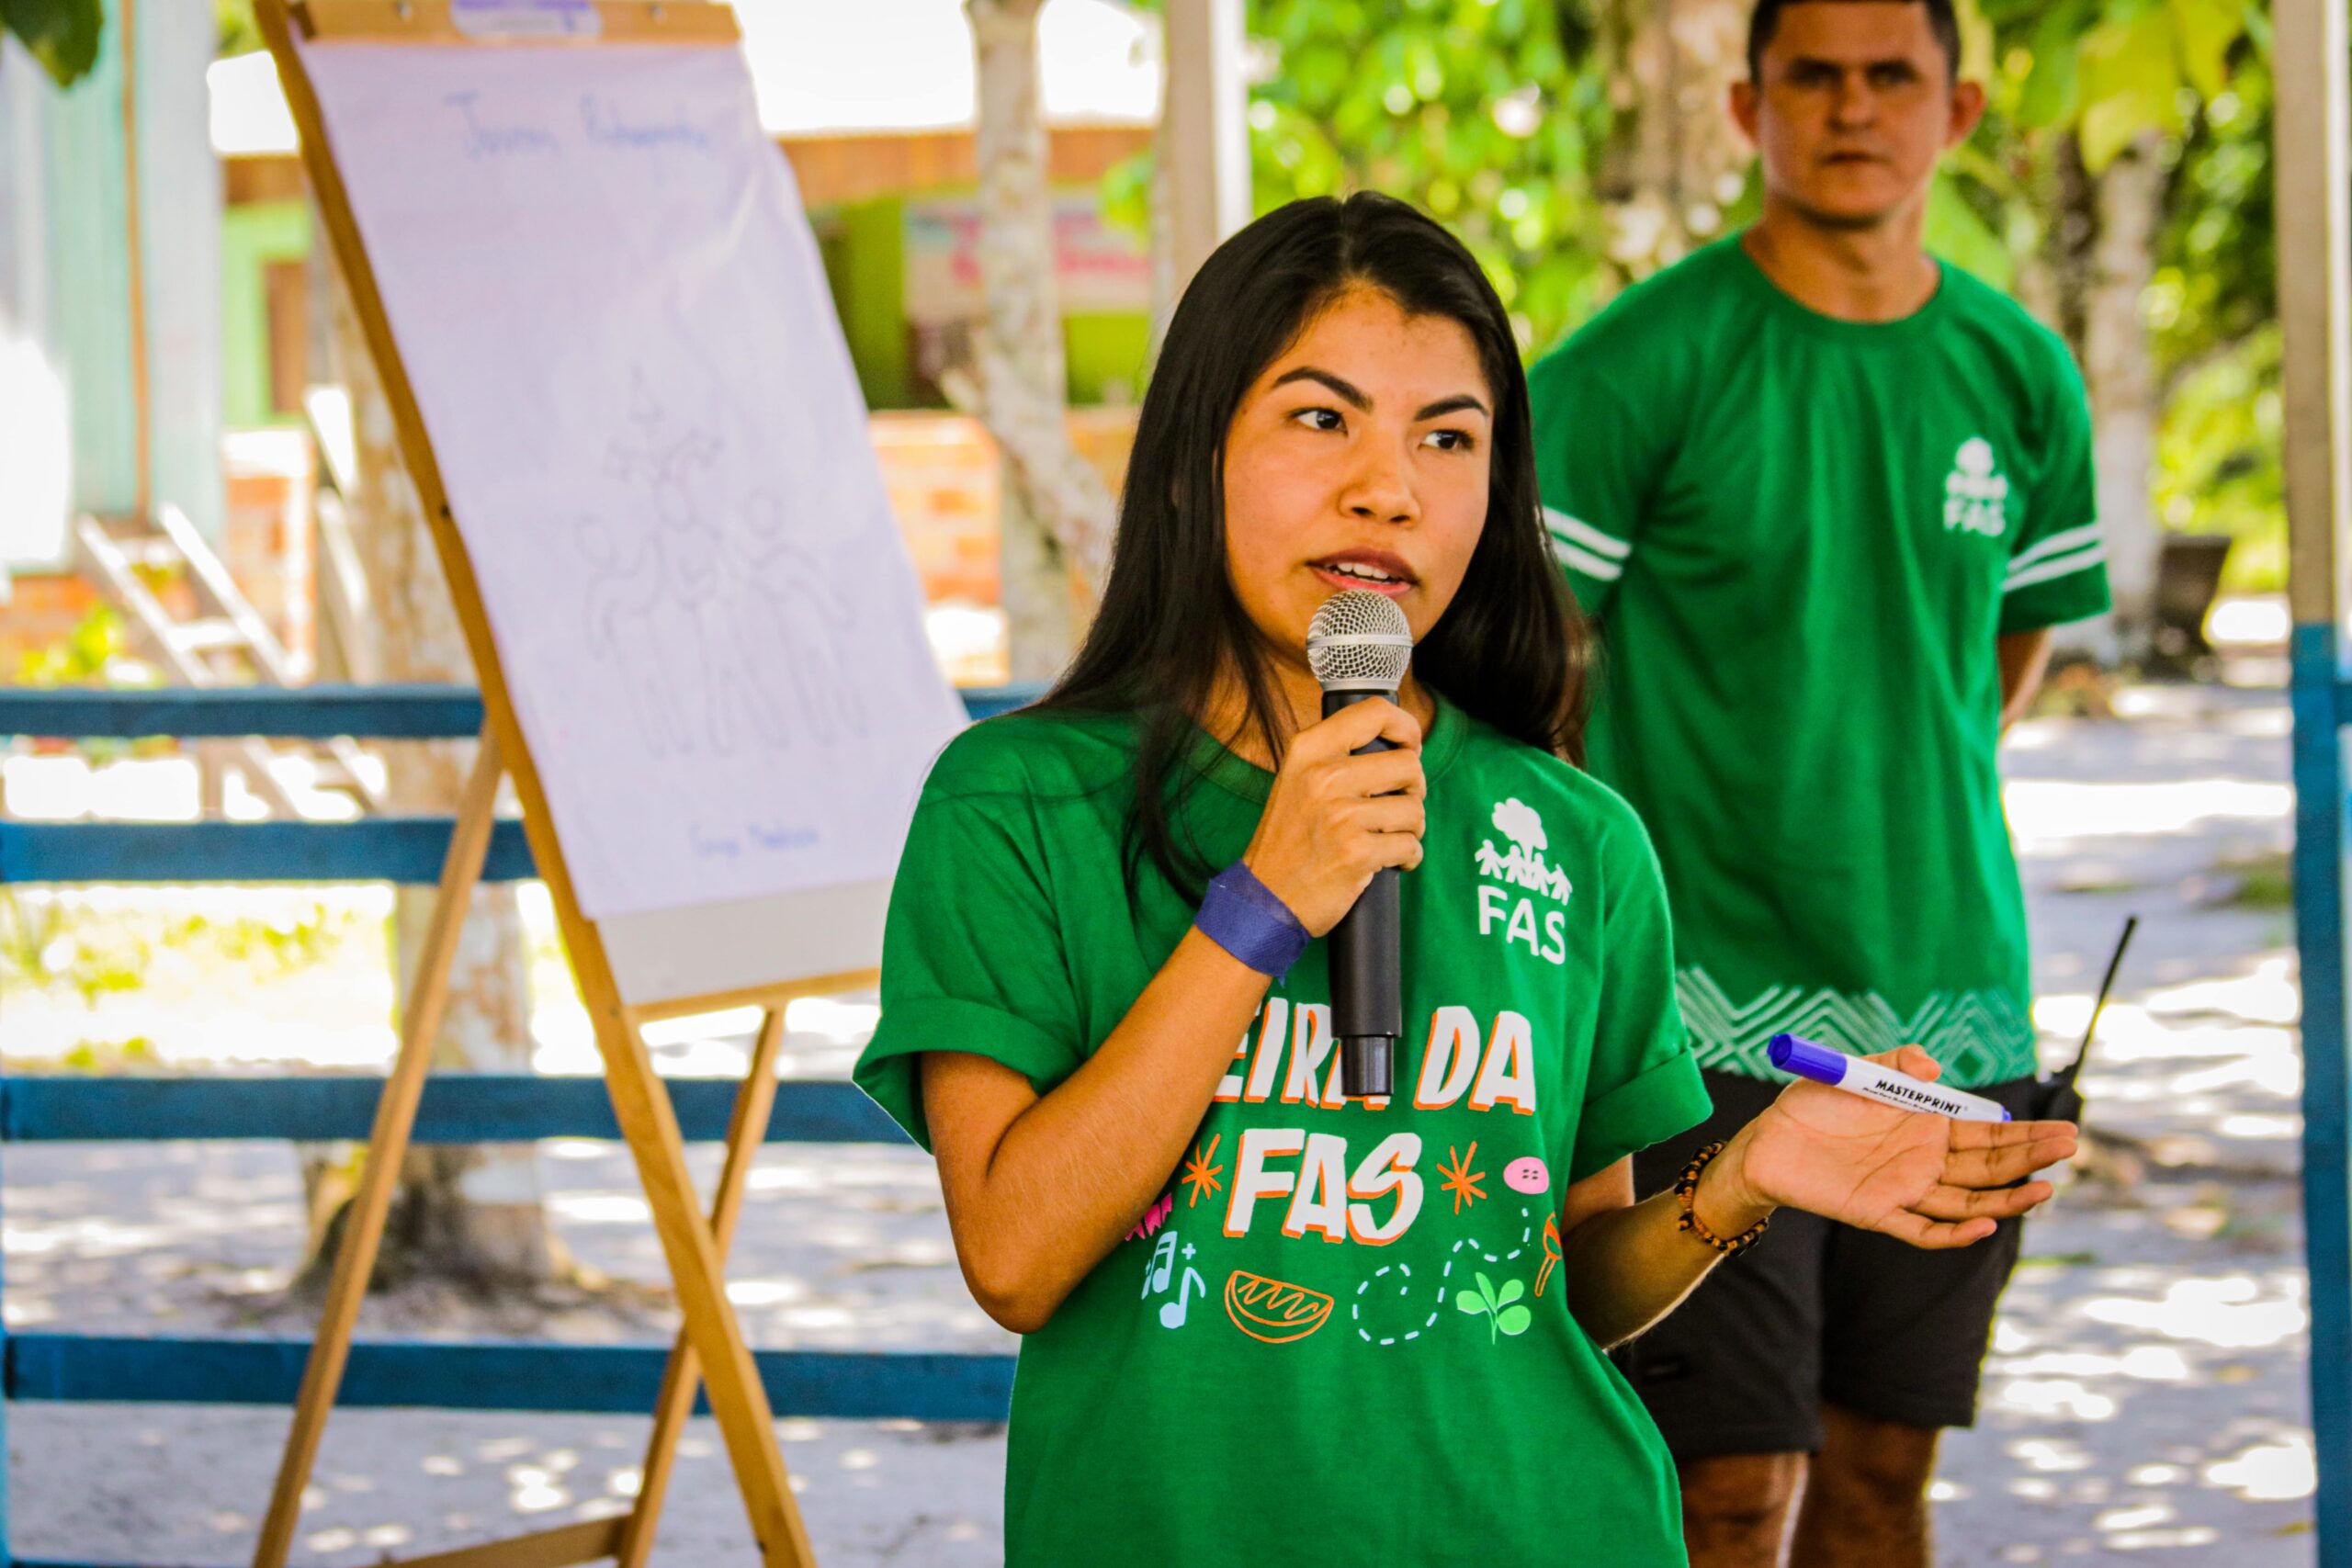 Colaborada da Fundação Amazônia Sustentável (FAS) participando de uma atividade de campo em comunidade indígena na Amazônia.